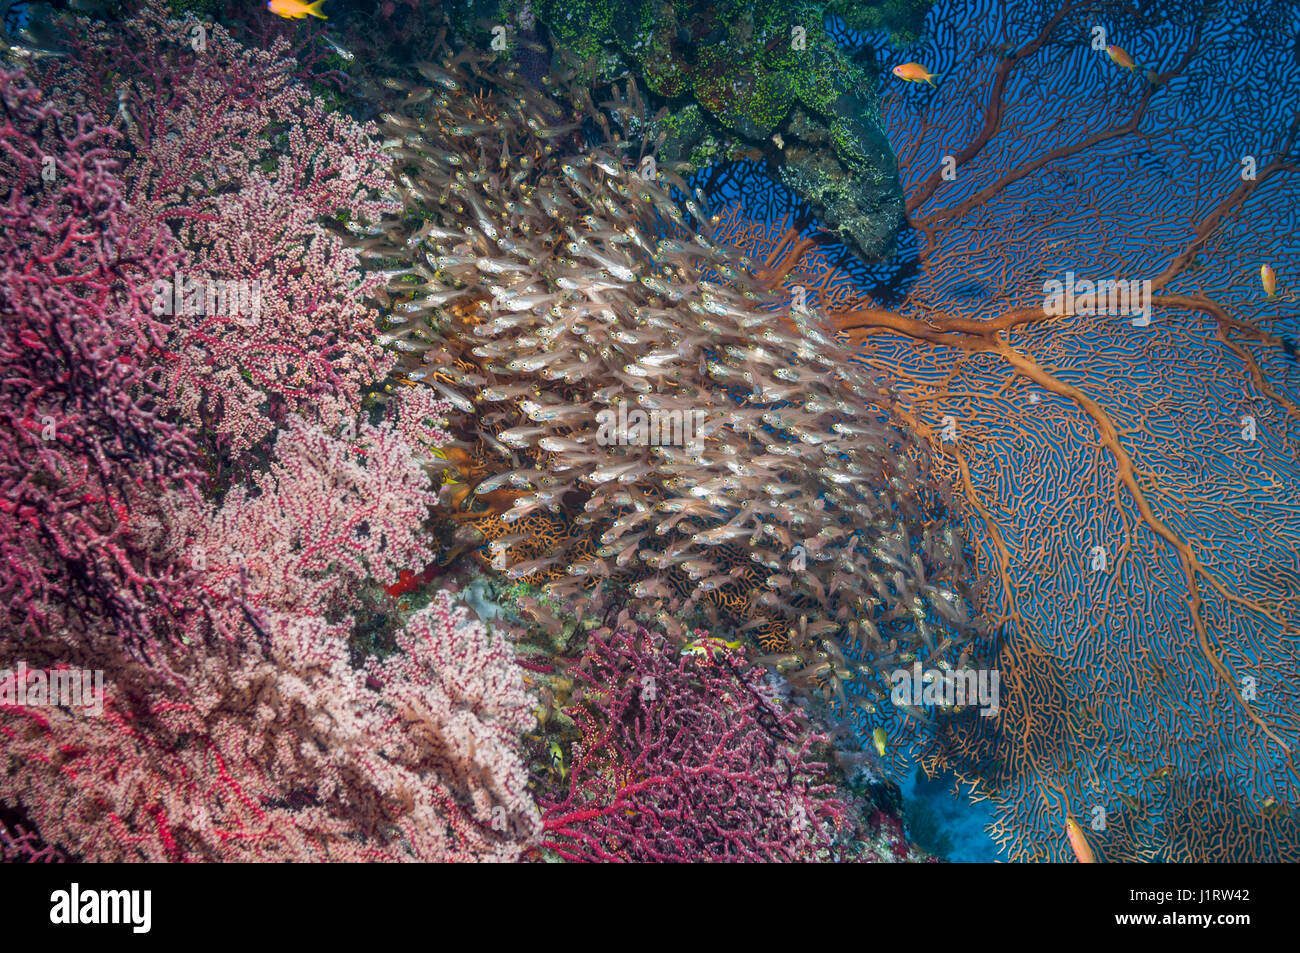 Spazzatrici pigmeo [Parapriacanthus ransonetti] con gorgonie coralli. Isole Similan, sul Mare delle Andamane, Thailandia. Foto Stock